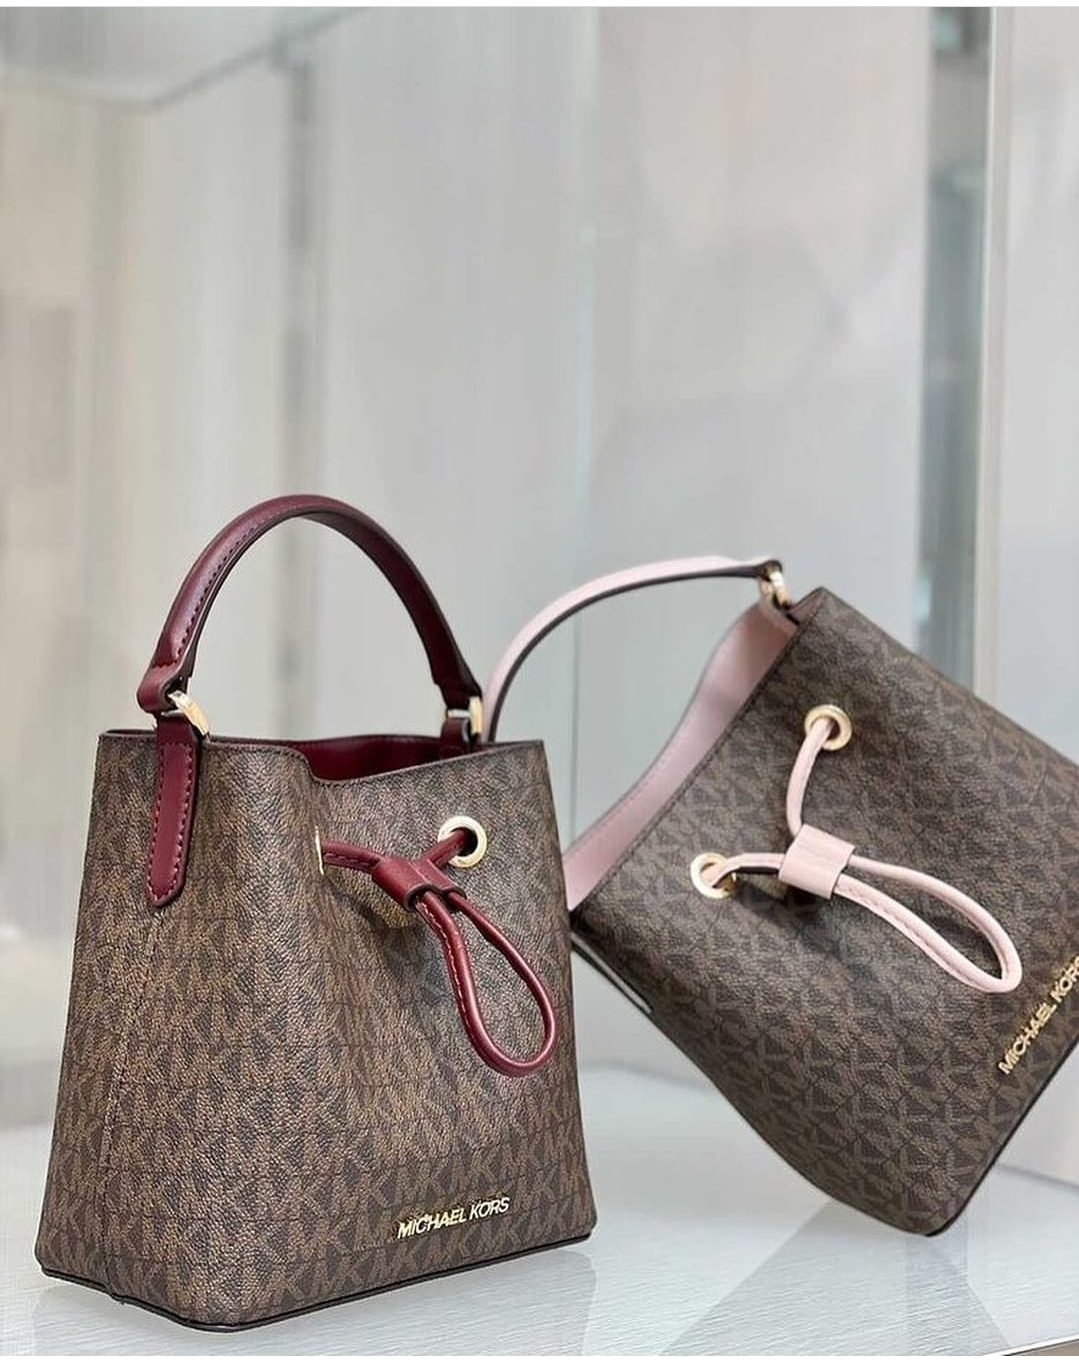 Michael Kors Suri Small Bucket Bag in Vanilla PVC : Amazon.in: Fashion